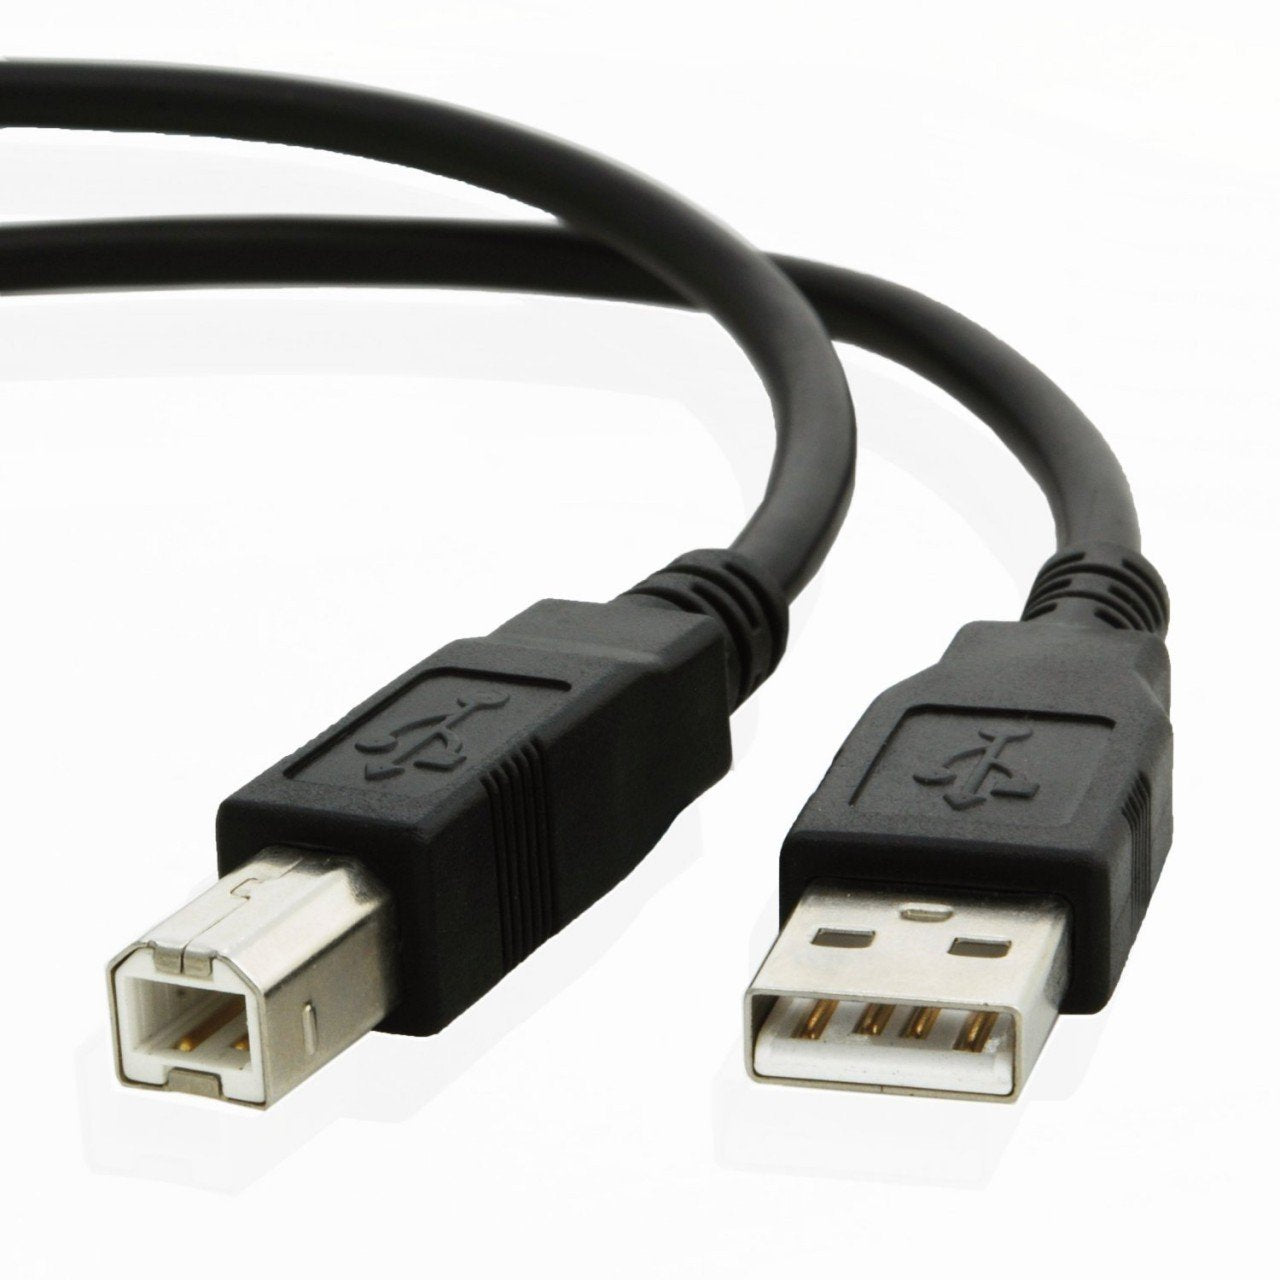 USB cable for Ifi Audio NANO iOne